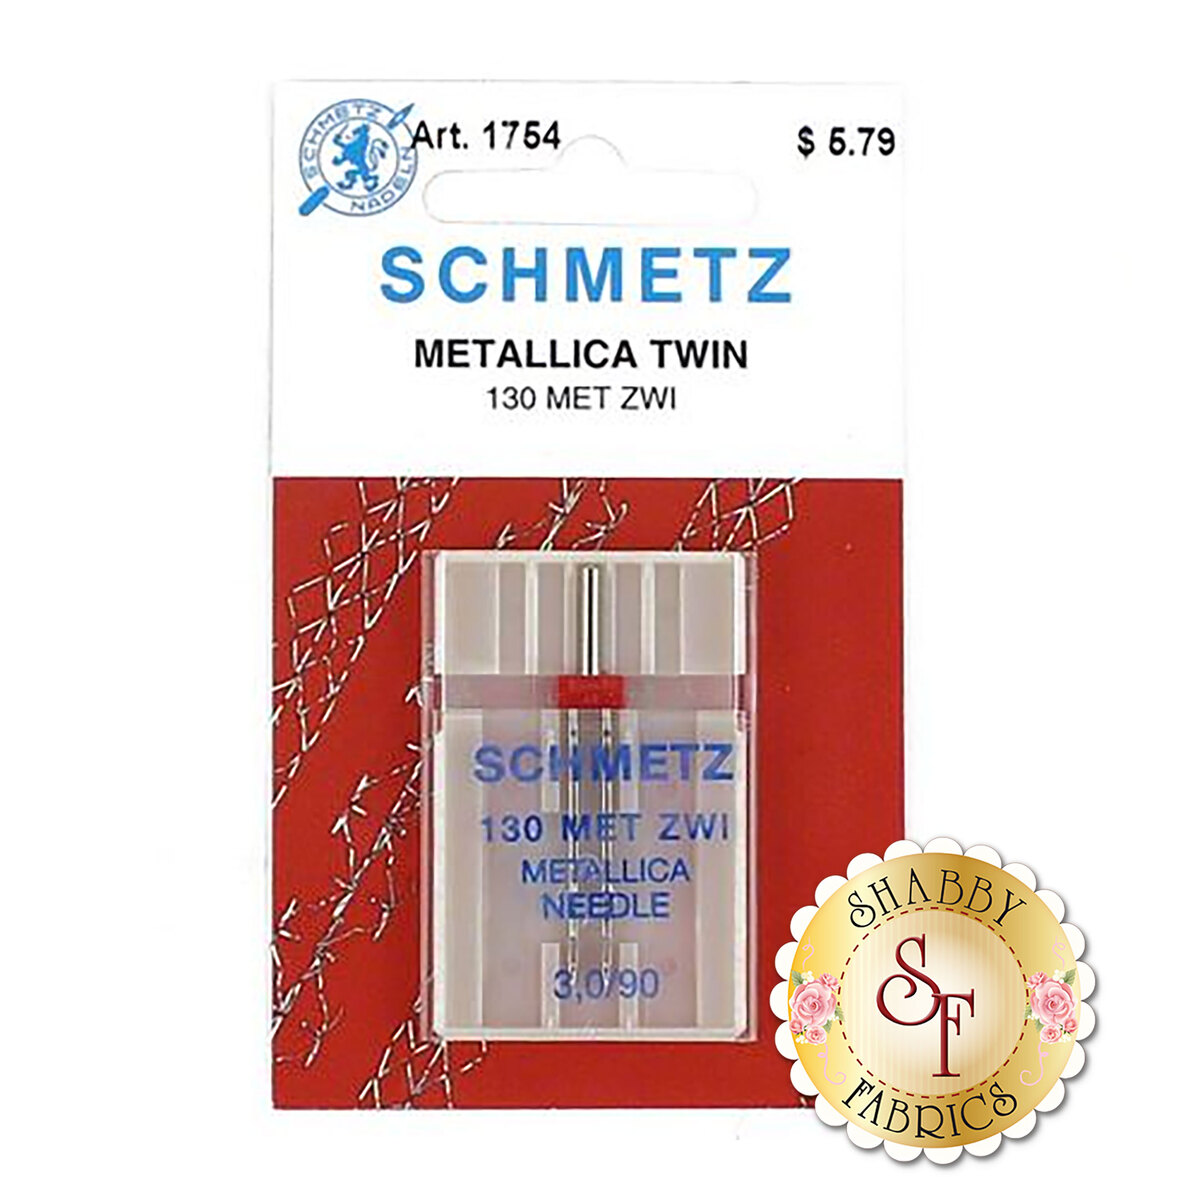 Schmetz Super Nonstick Needles (Size: 90/14)